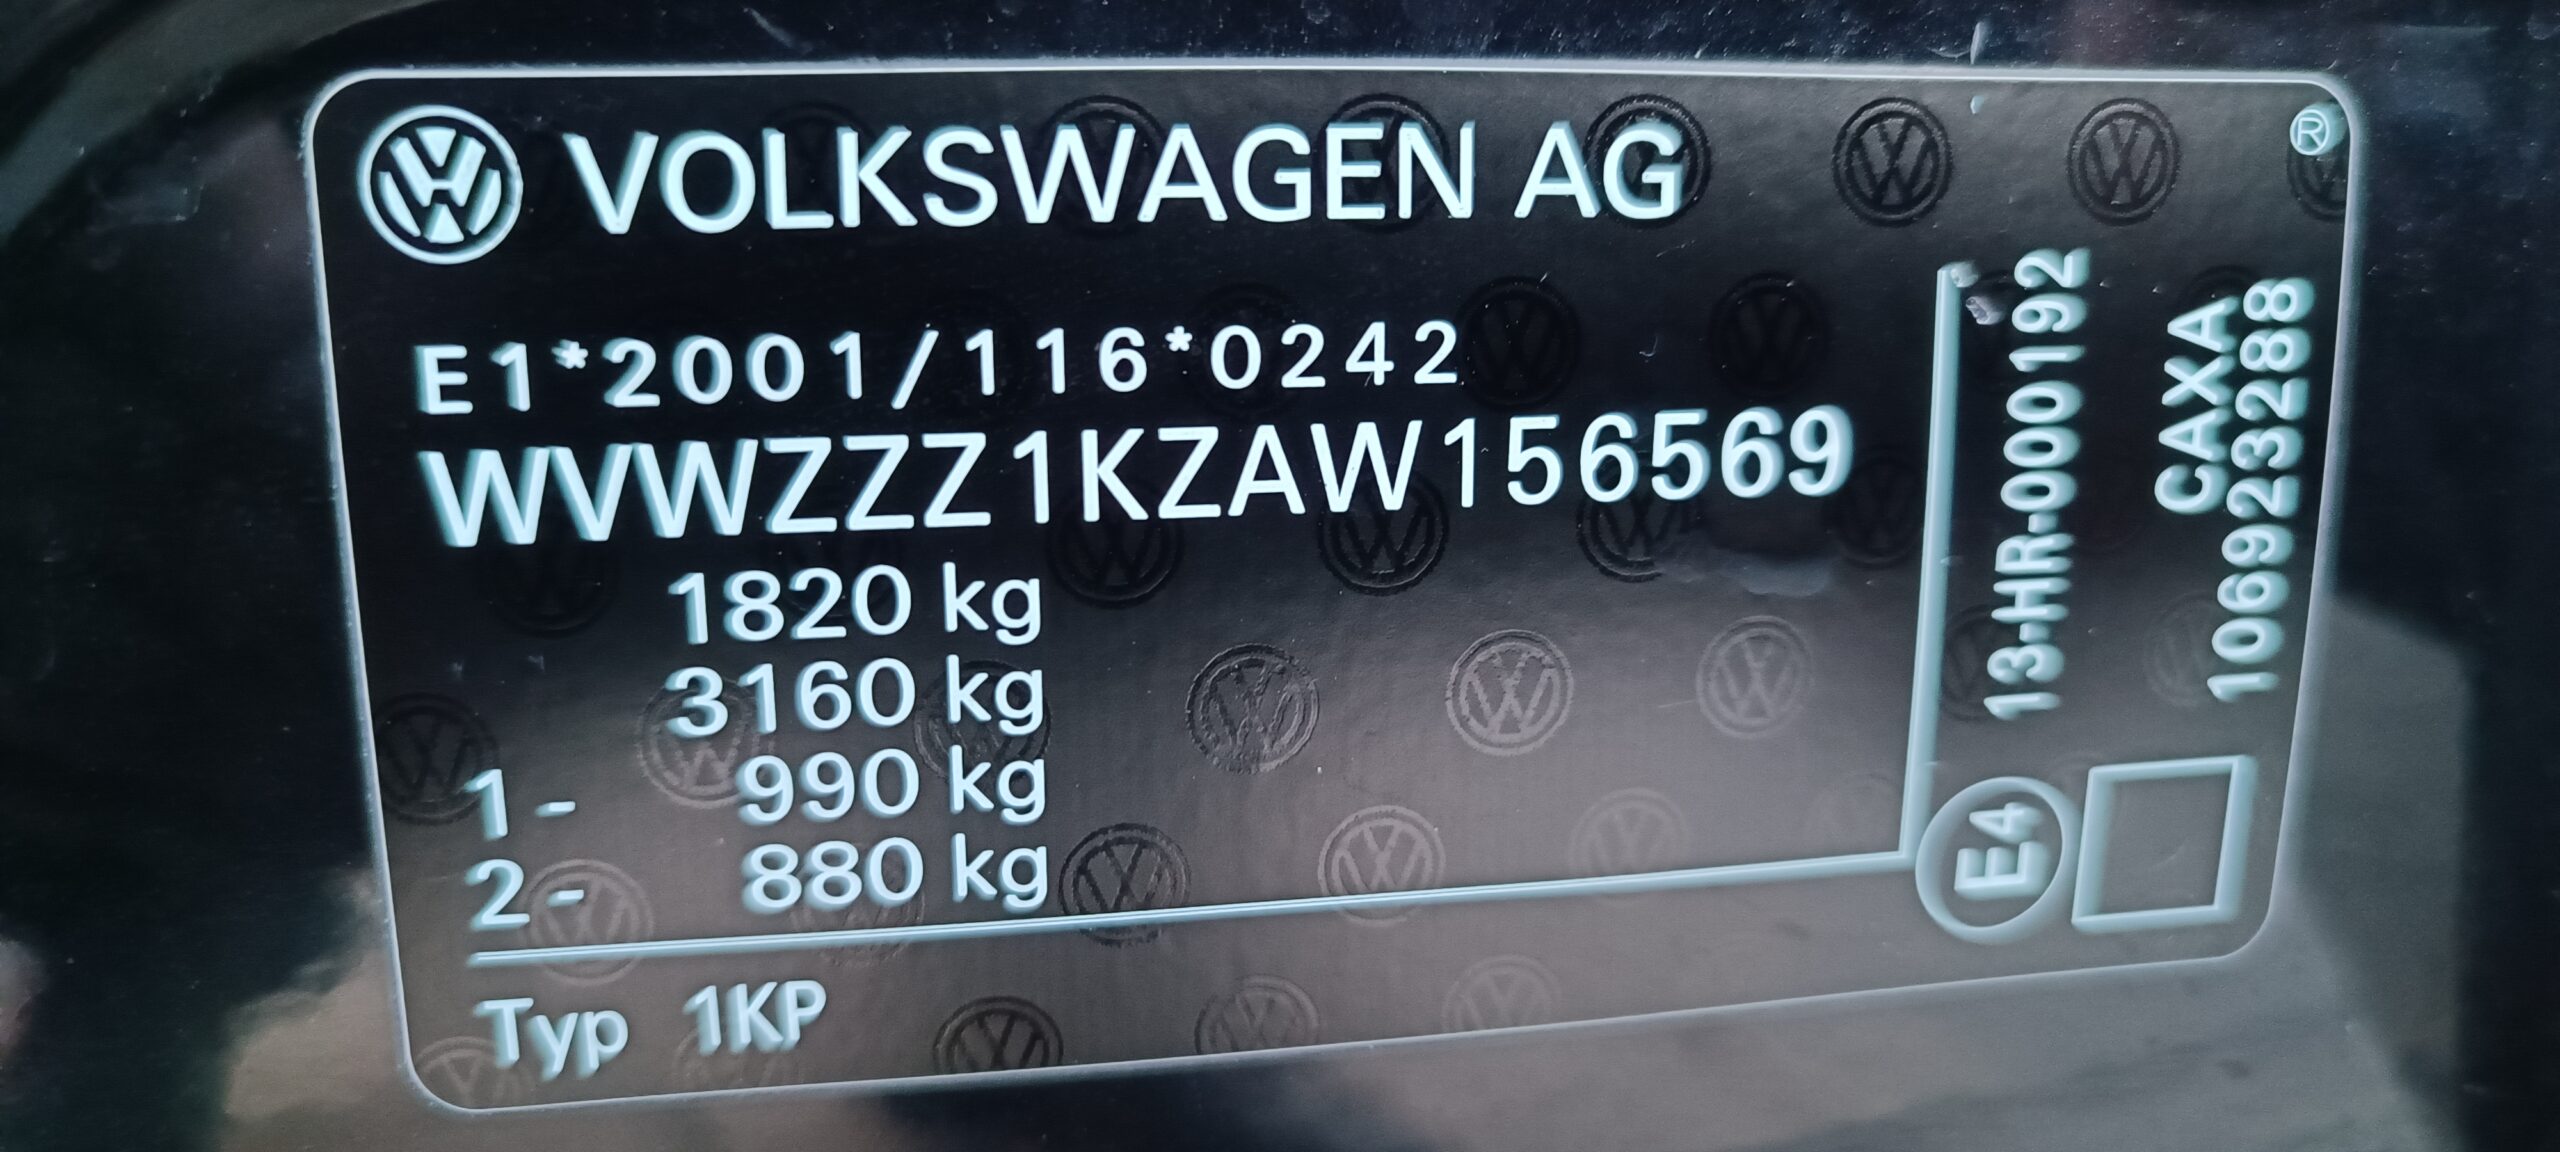 VOLKSWAGEN VW GOLF 6, 1.4 TFSI, 122 CP, EURO 5, AN 2010